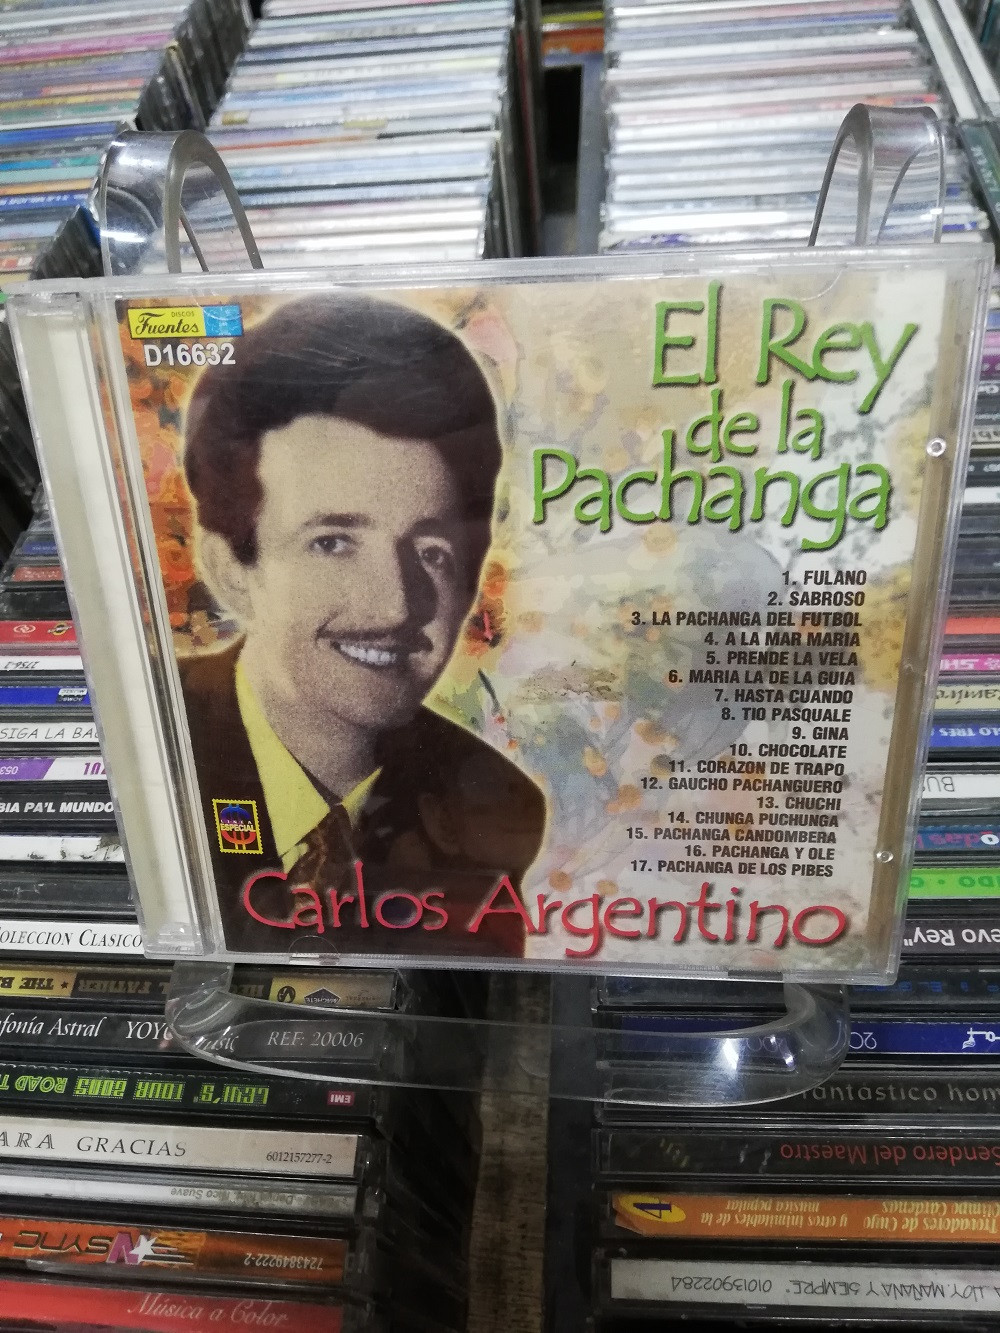 Imagen CD CARLOS ARGENTINO - EL REY DE LA PACHANGA 1